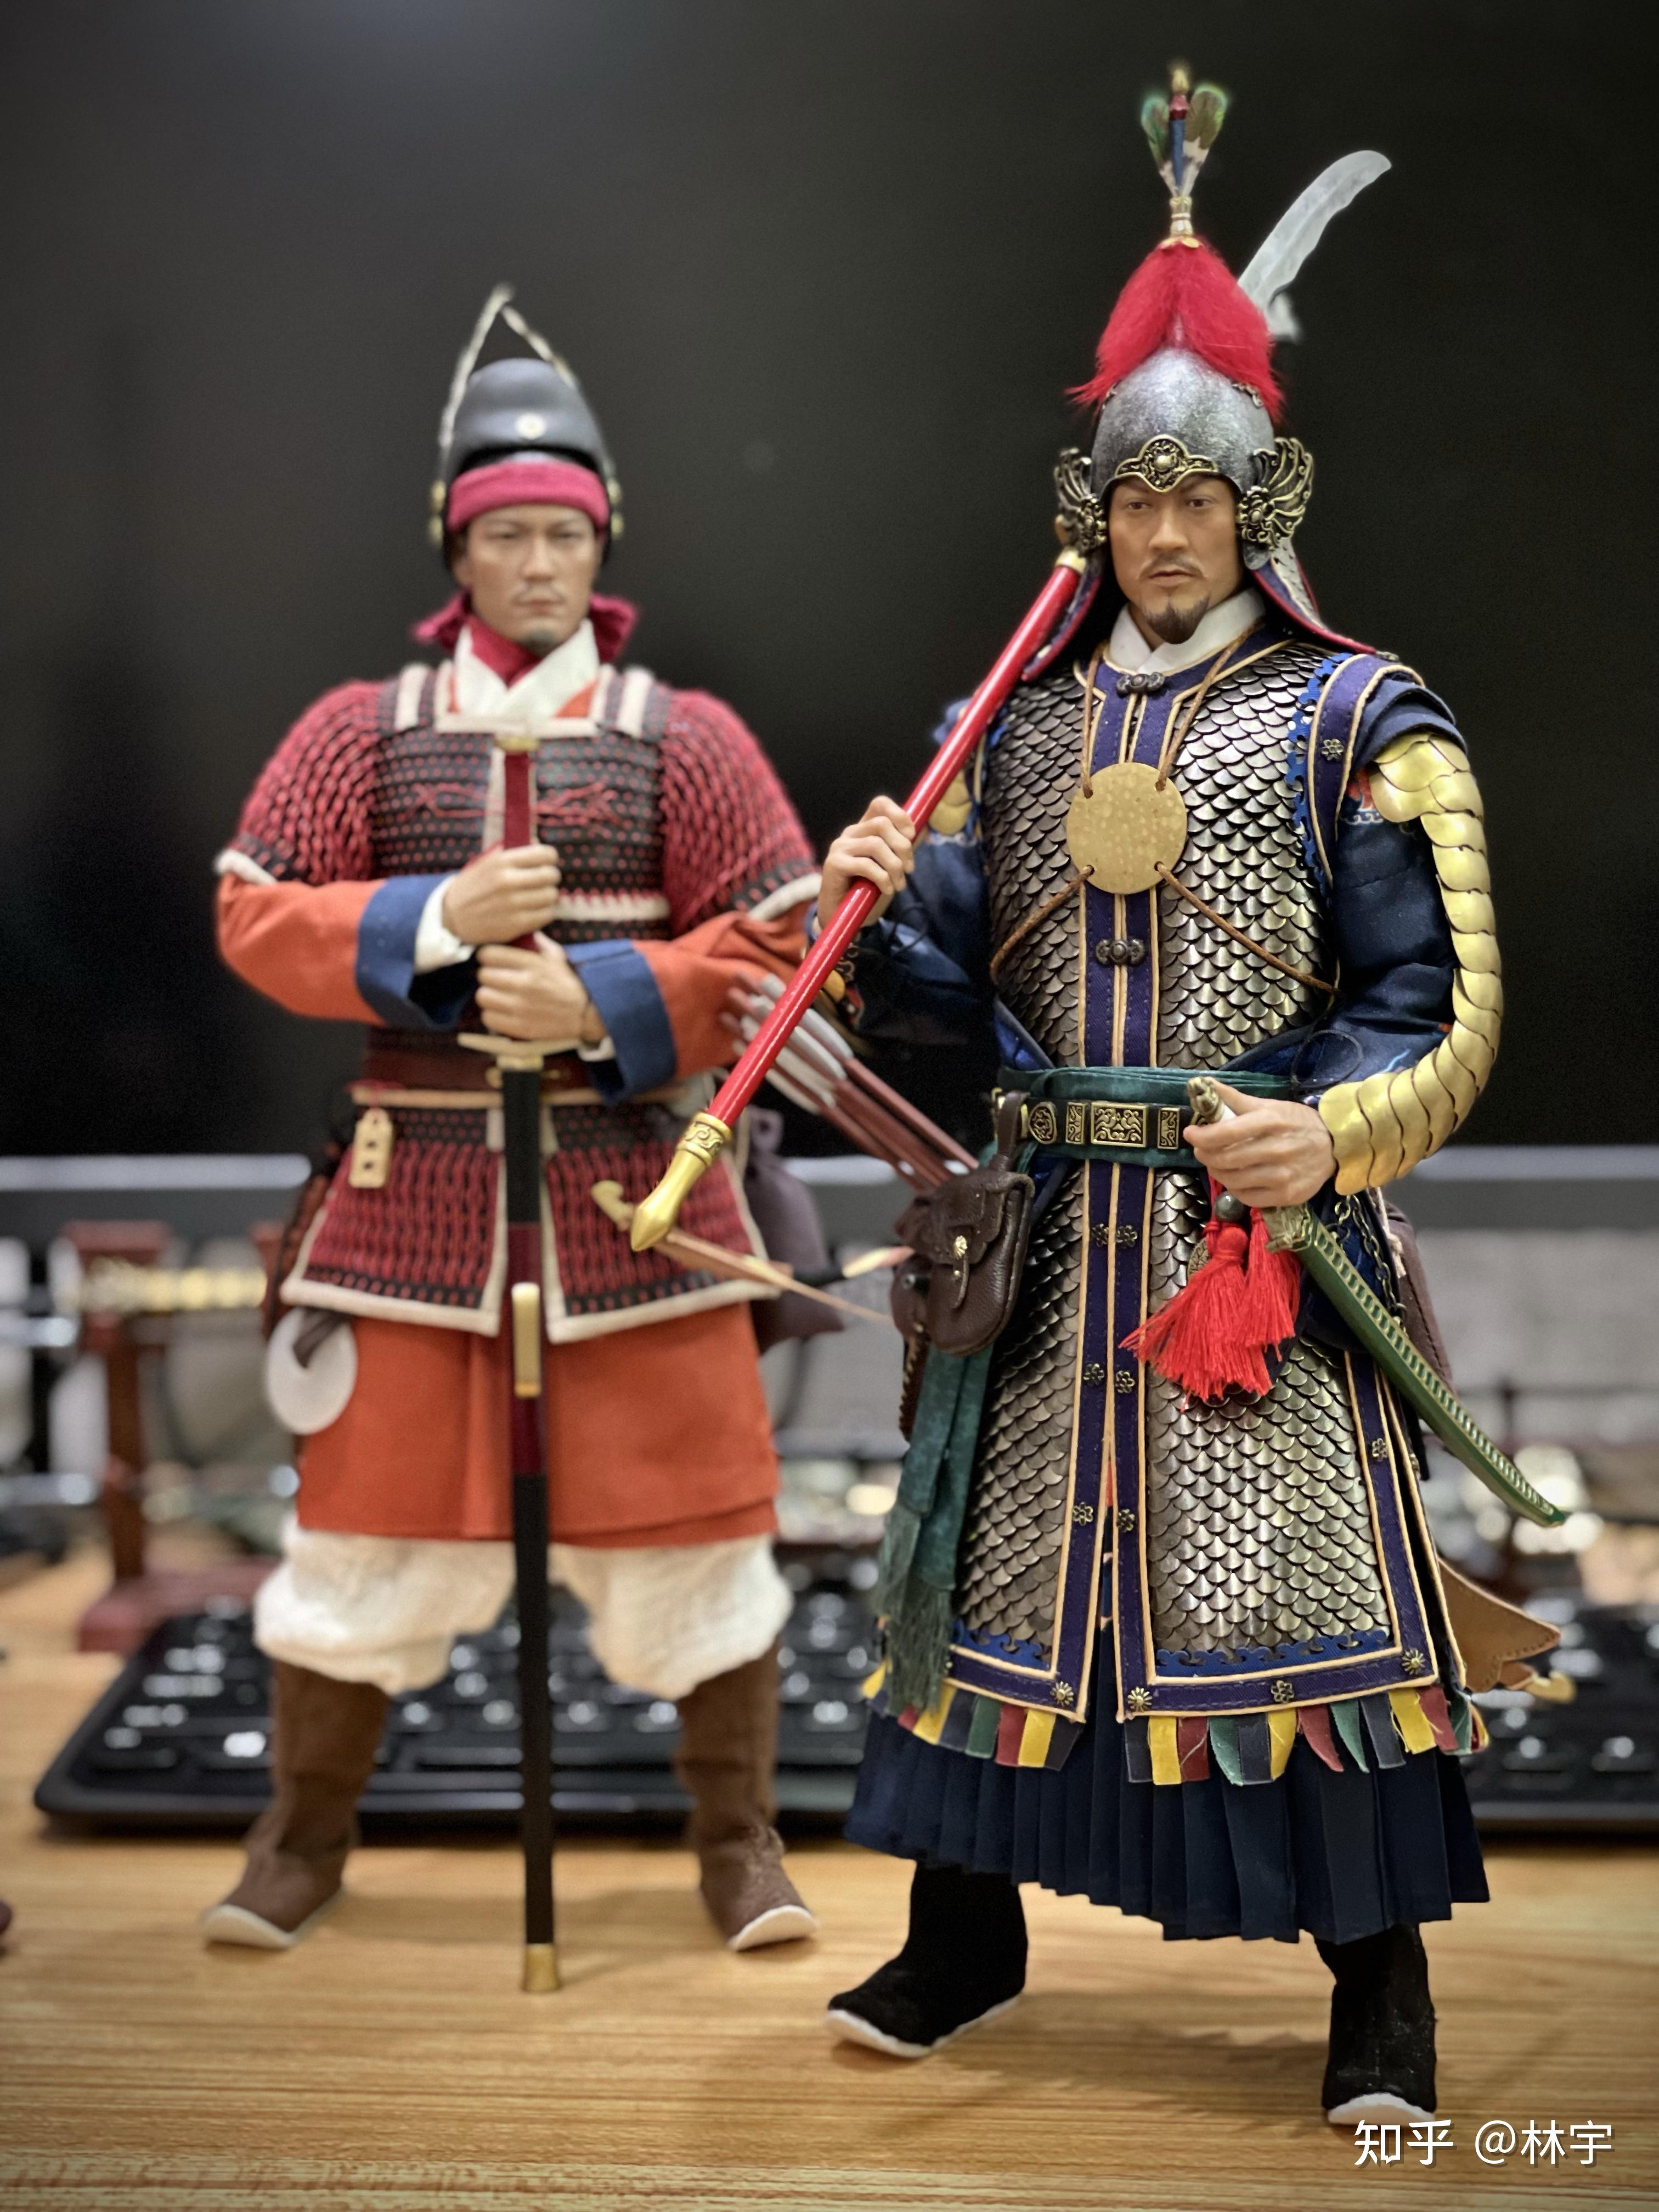 现在的盔甲爱好者大都喜欢西甲和日甲中国古代的盔甲都很挫吗